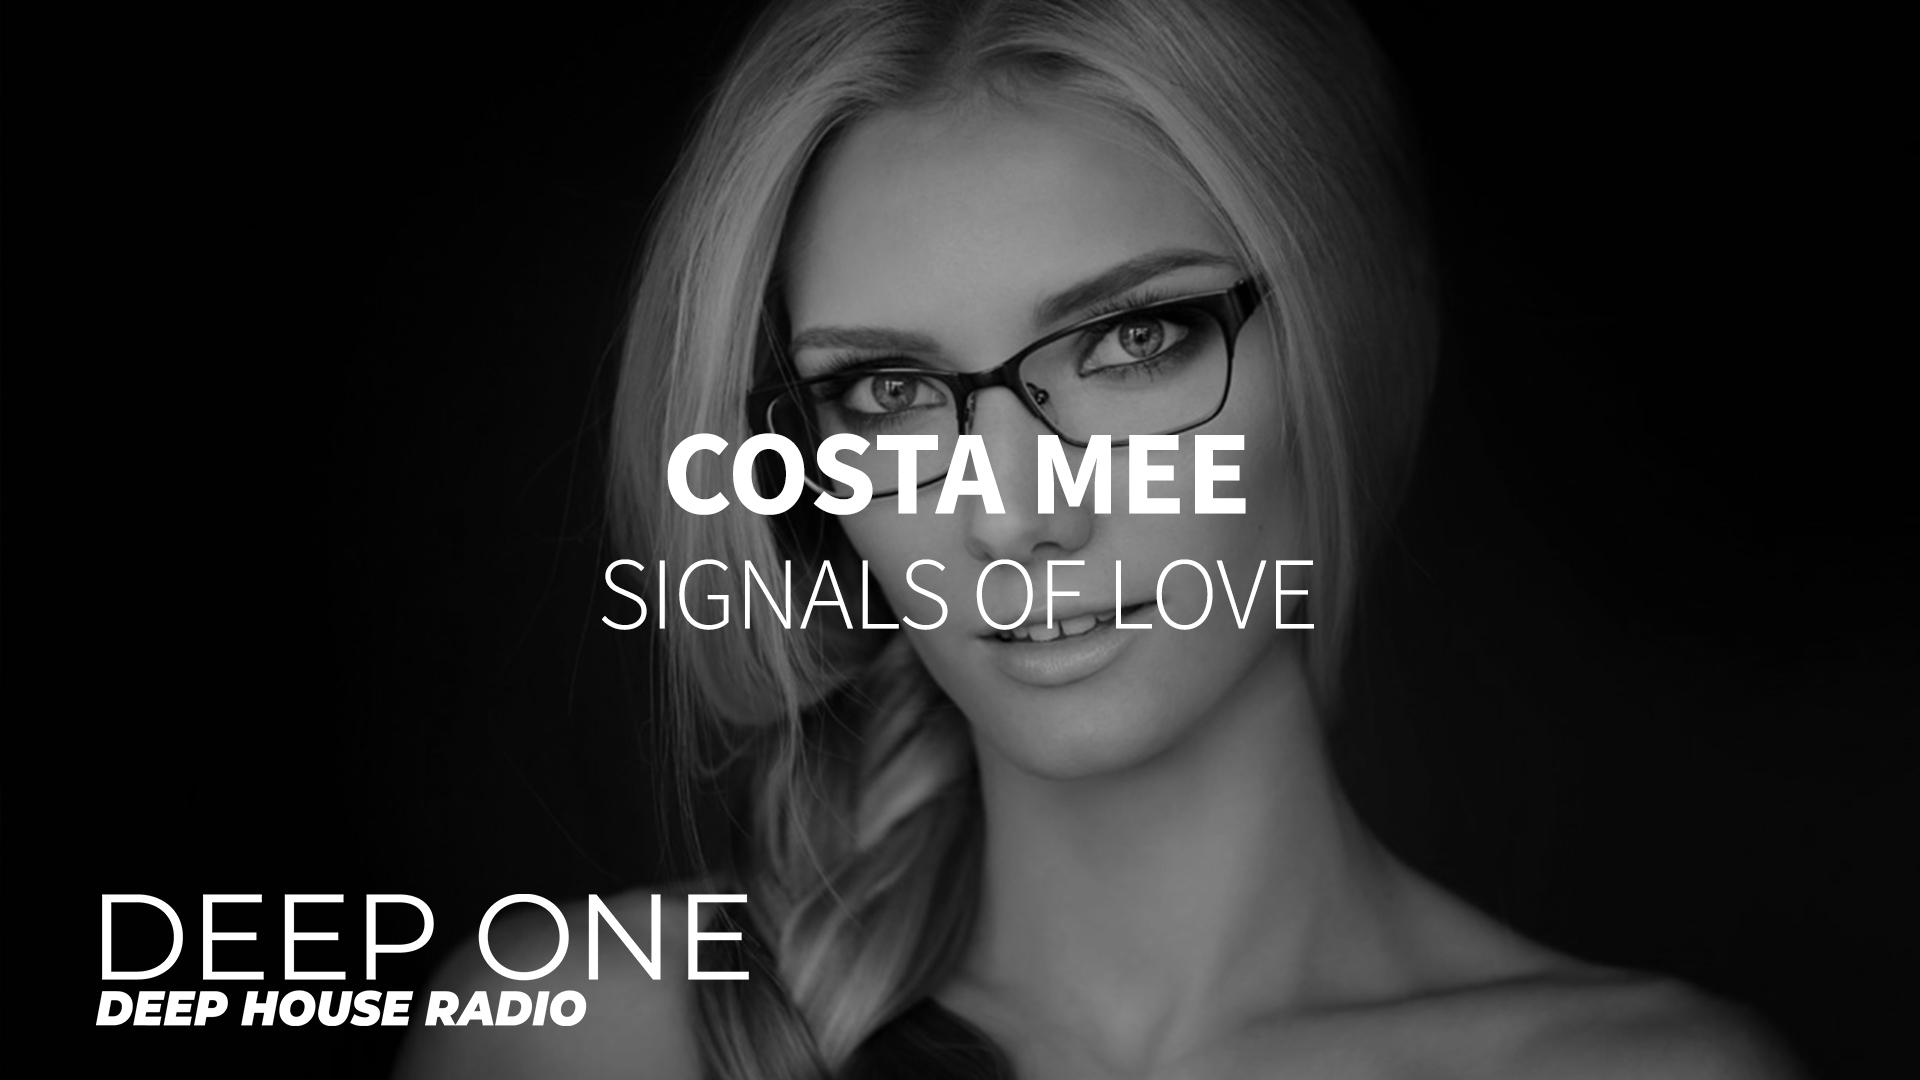 Песни costa mee. Costa mee фото. Costa mee Signals of Love. Радио Deep one. "Costa mee" && ( исполнитель | группа | музыка | Music | Band | artist ) && (фото | photo).